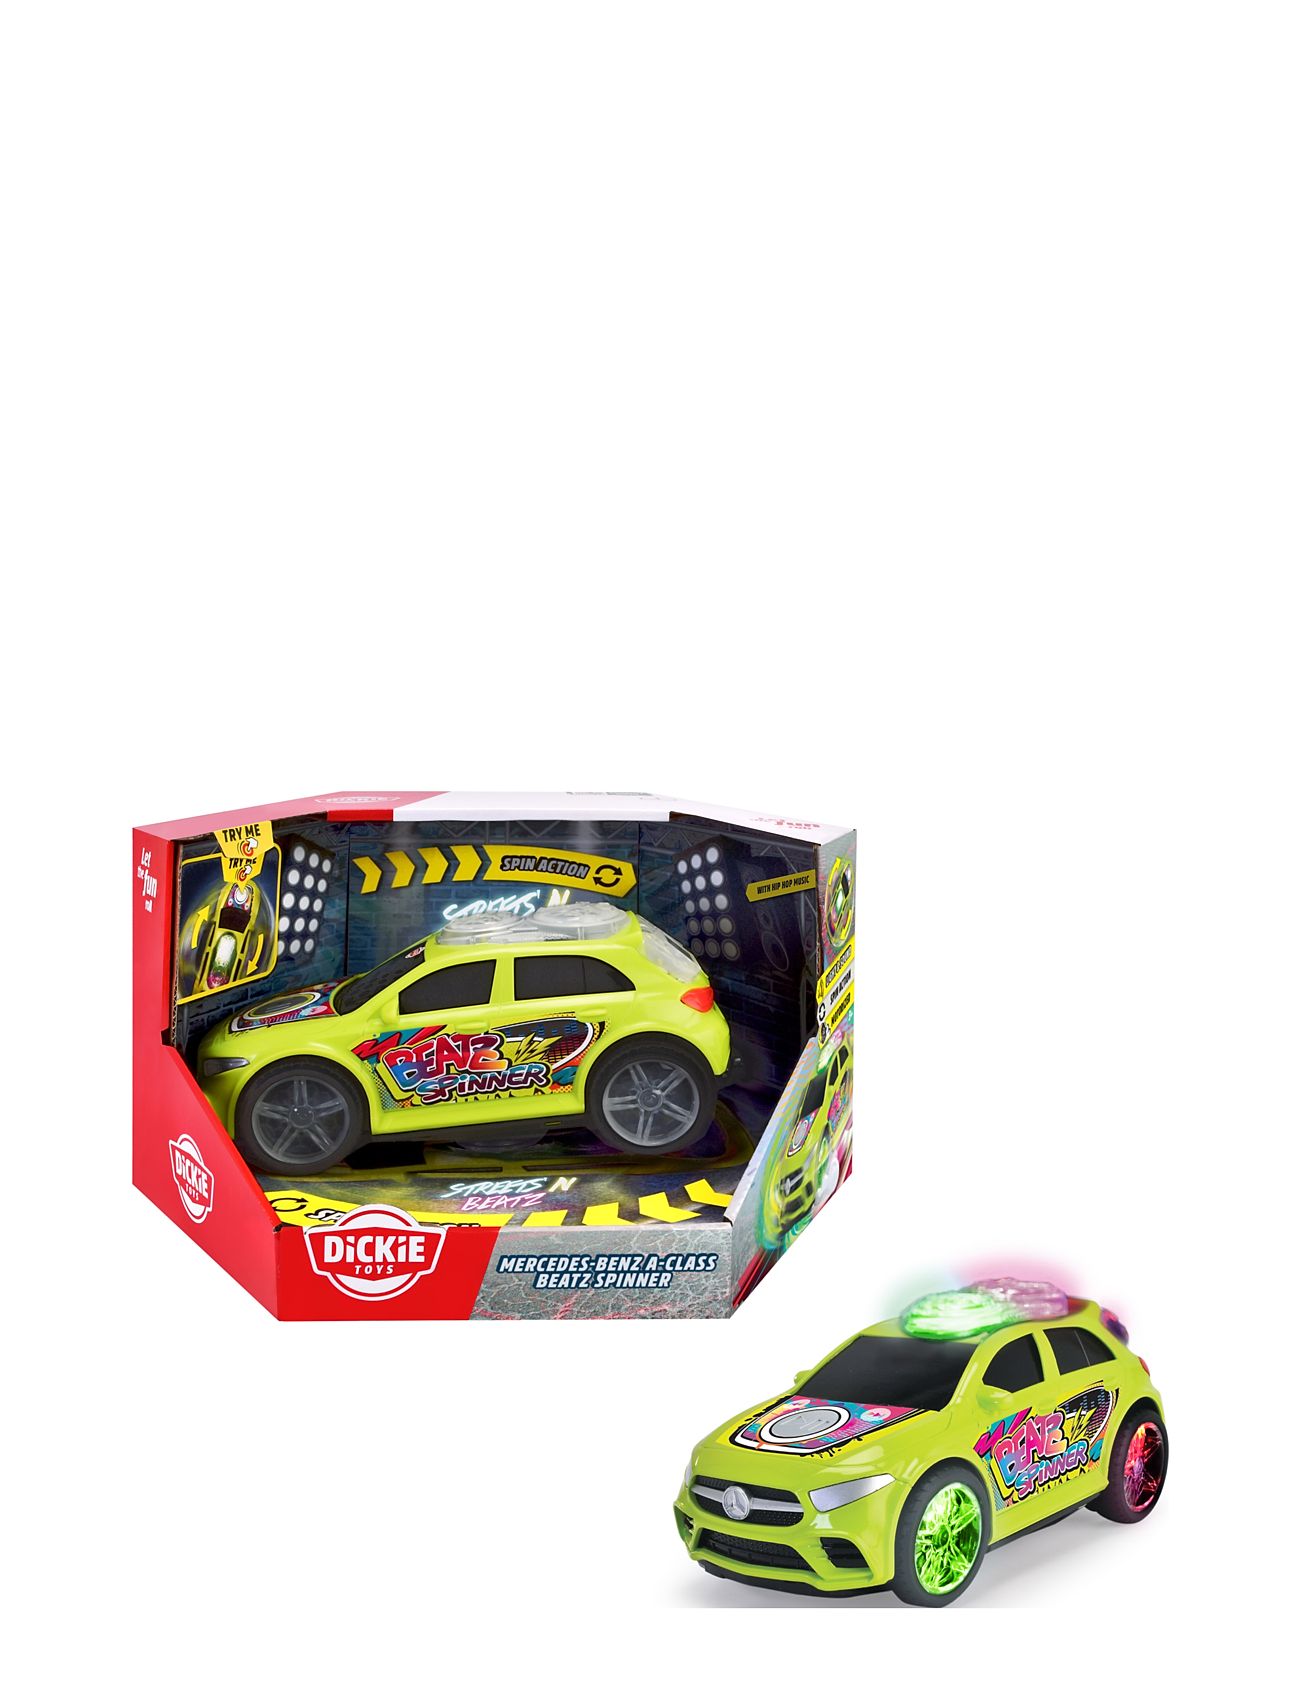 Dickie Toys Mercedes A Class Beatz Spinner Toys Toy Cars & Vehicles Toy Cars Green Dickie Toys